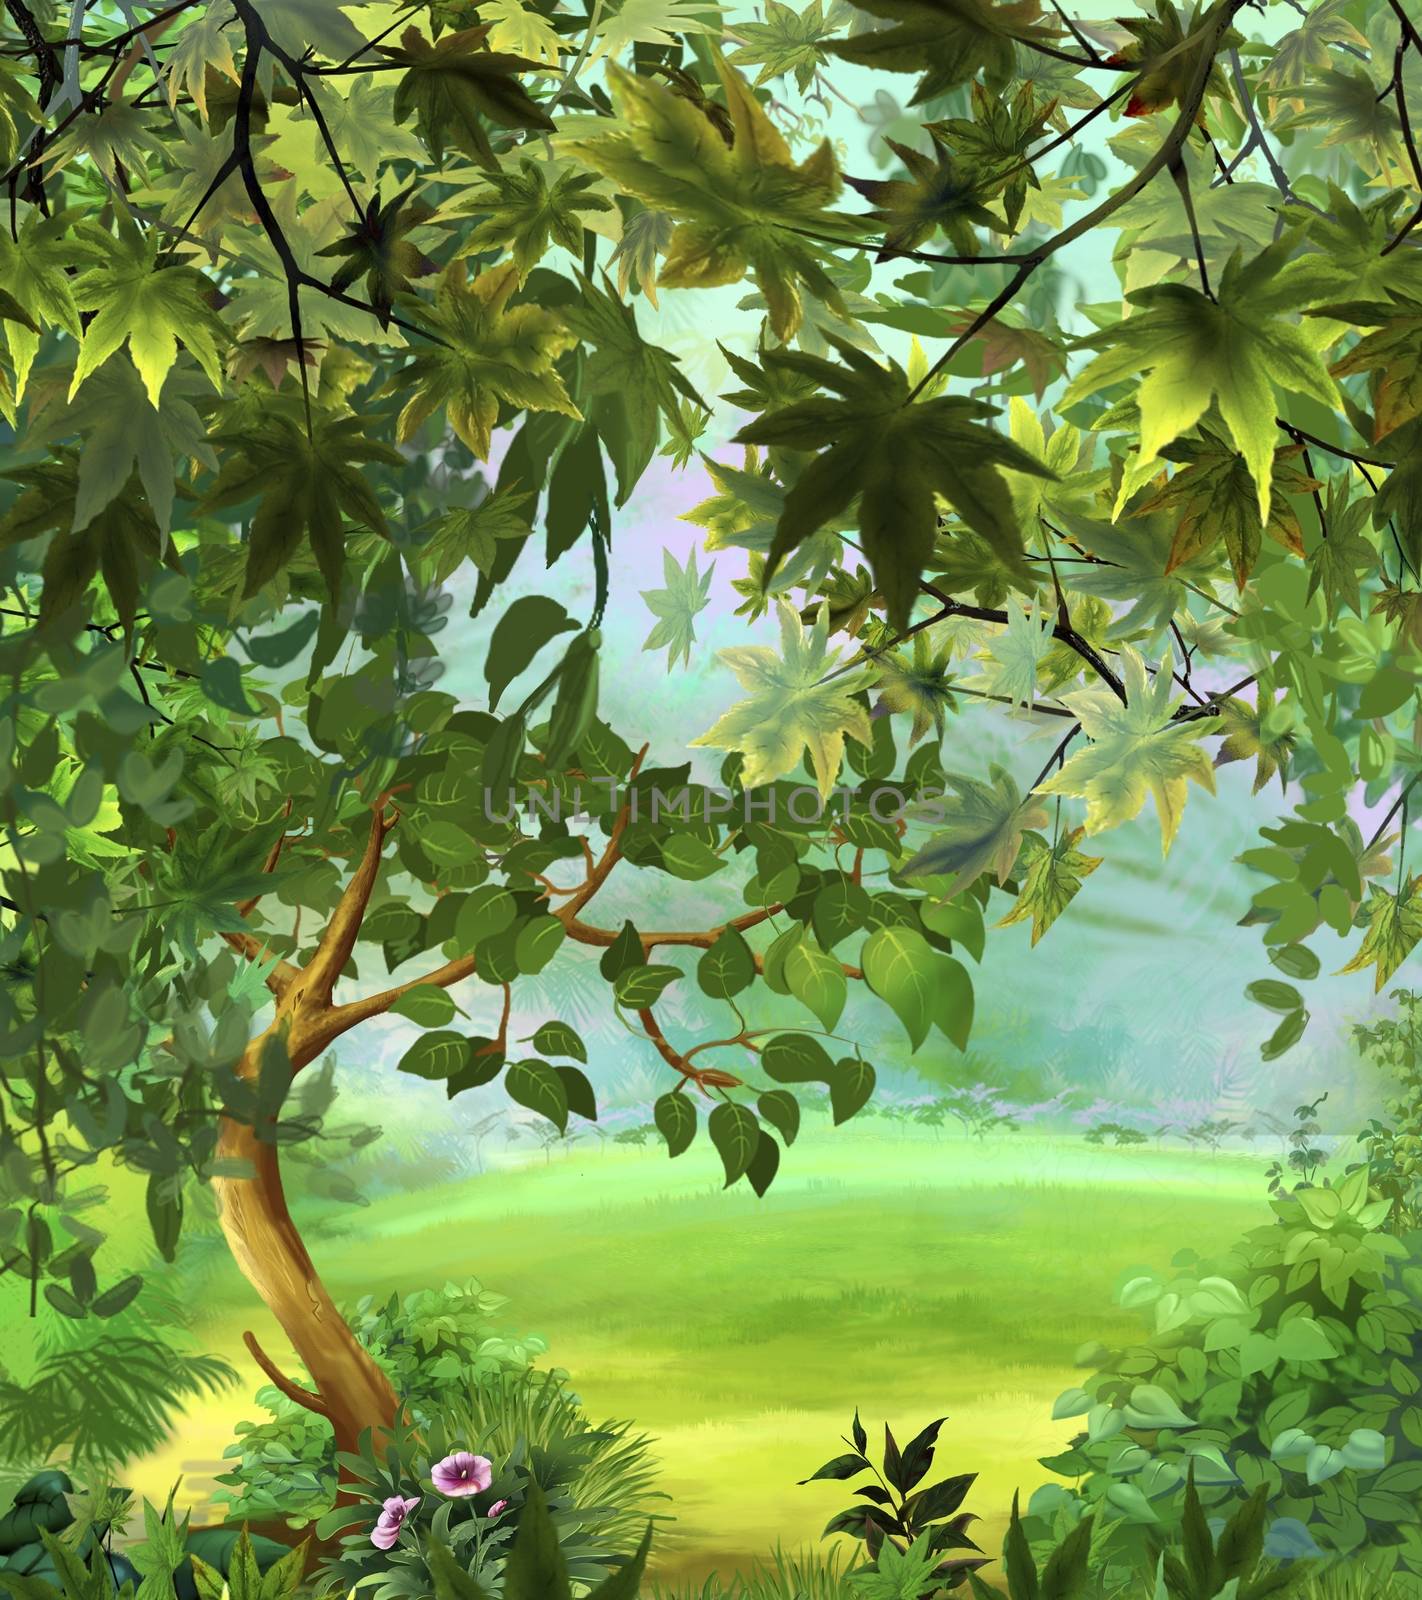 Tree in a Meadow by Multipedia